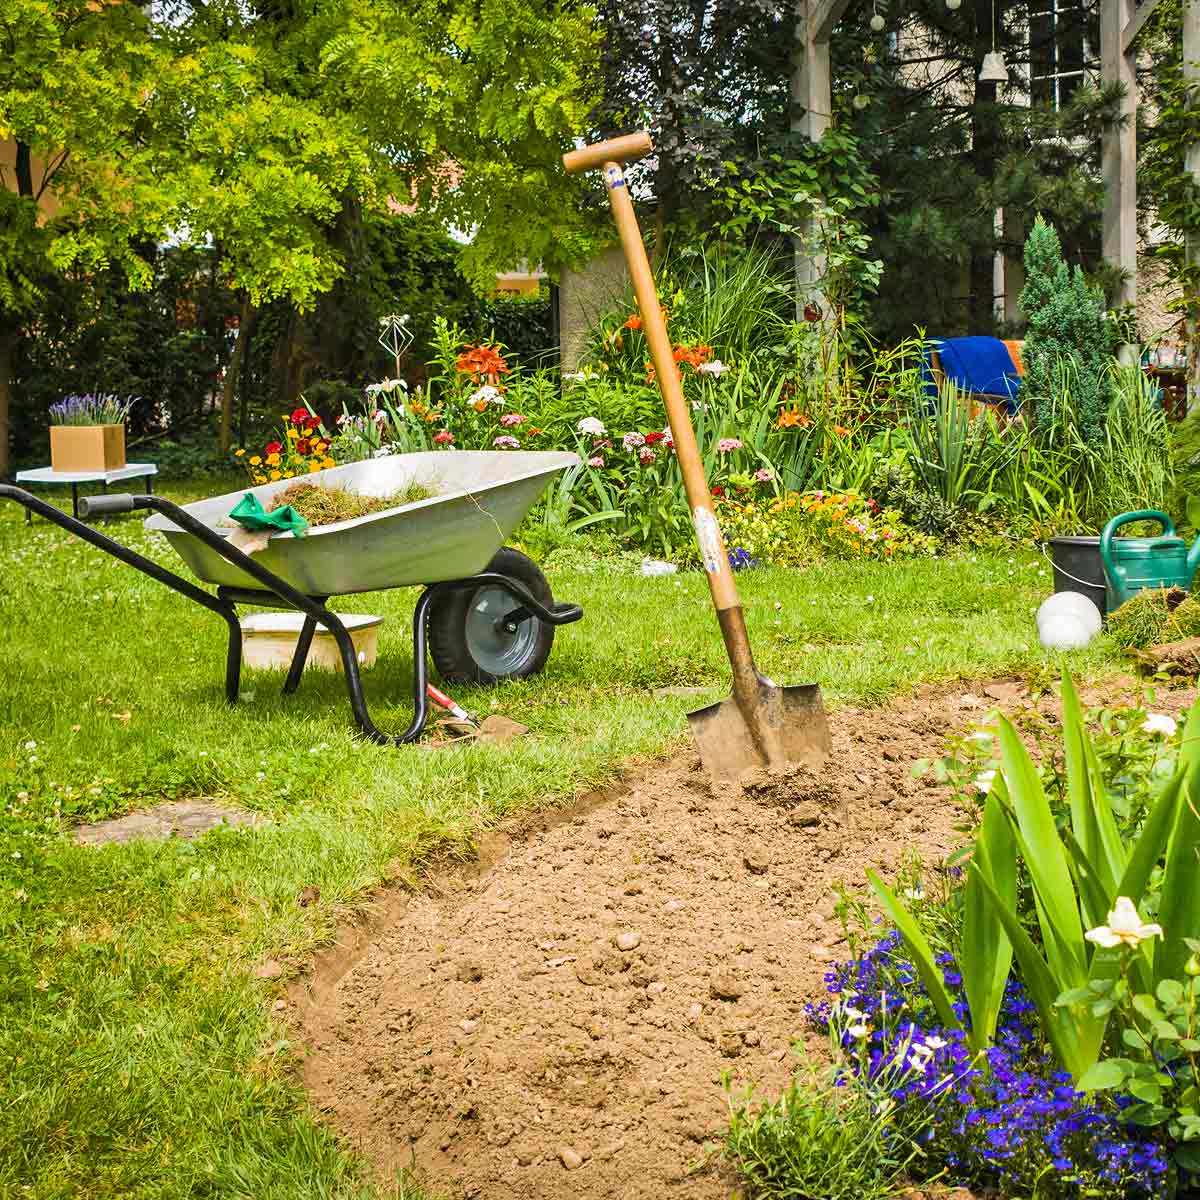 Griffe de jardin, binette, beche... choisir le bon outil pour travailler la terre - Brouette, echelle, secateur... les outils indispensables a l entretien du jardin